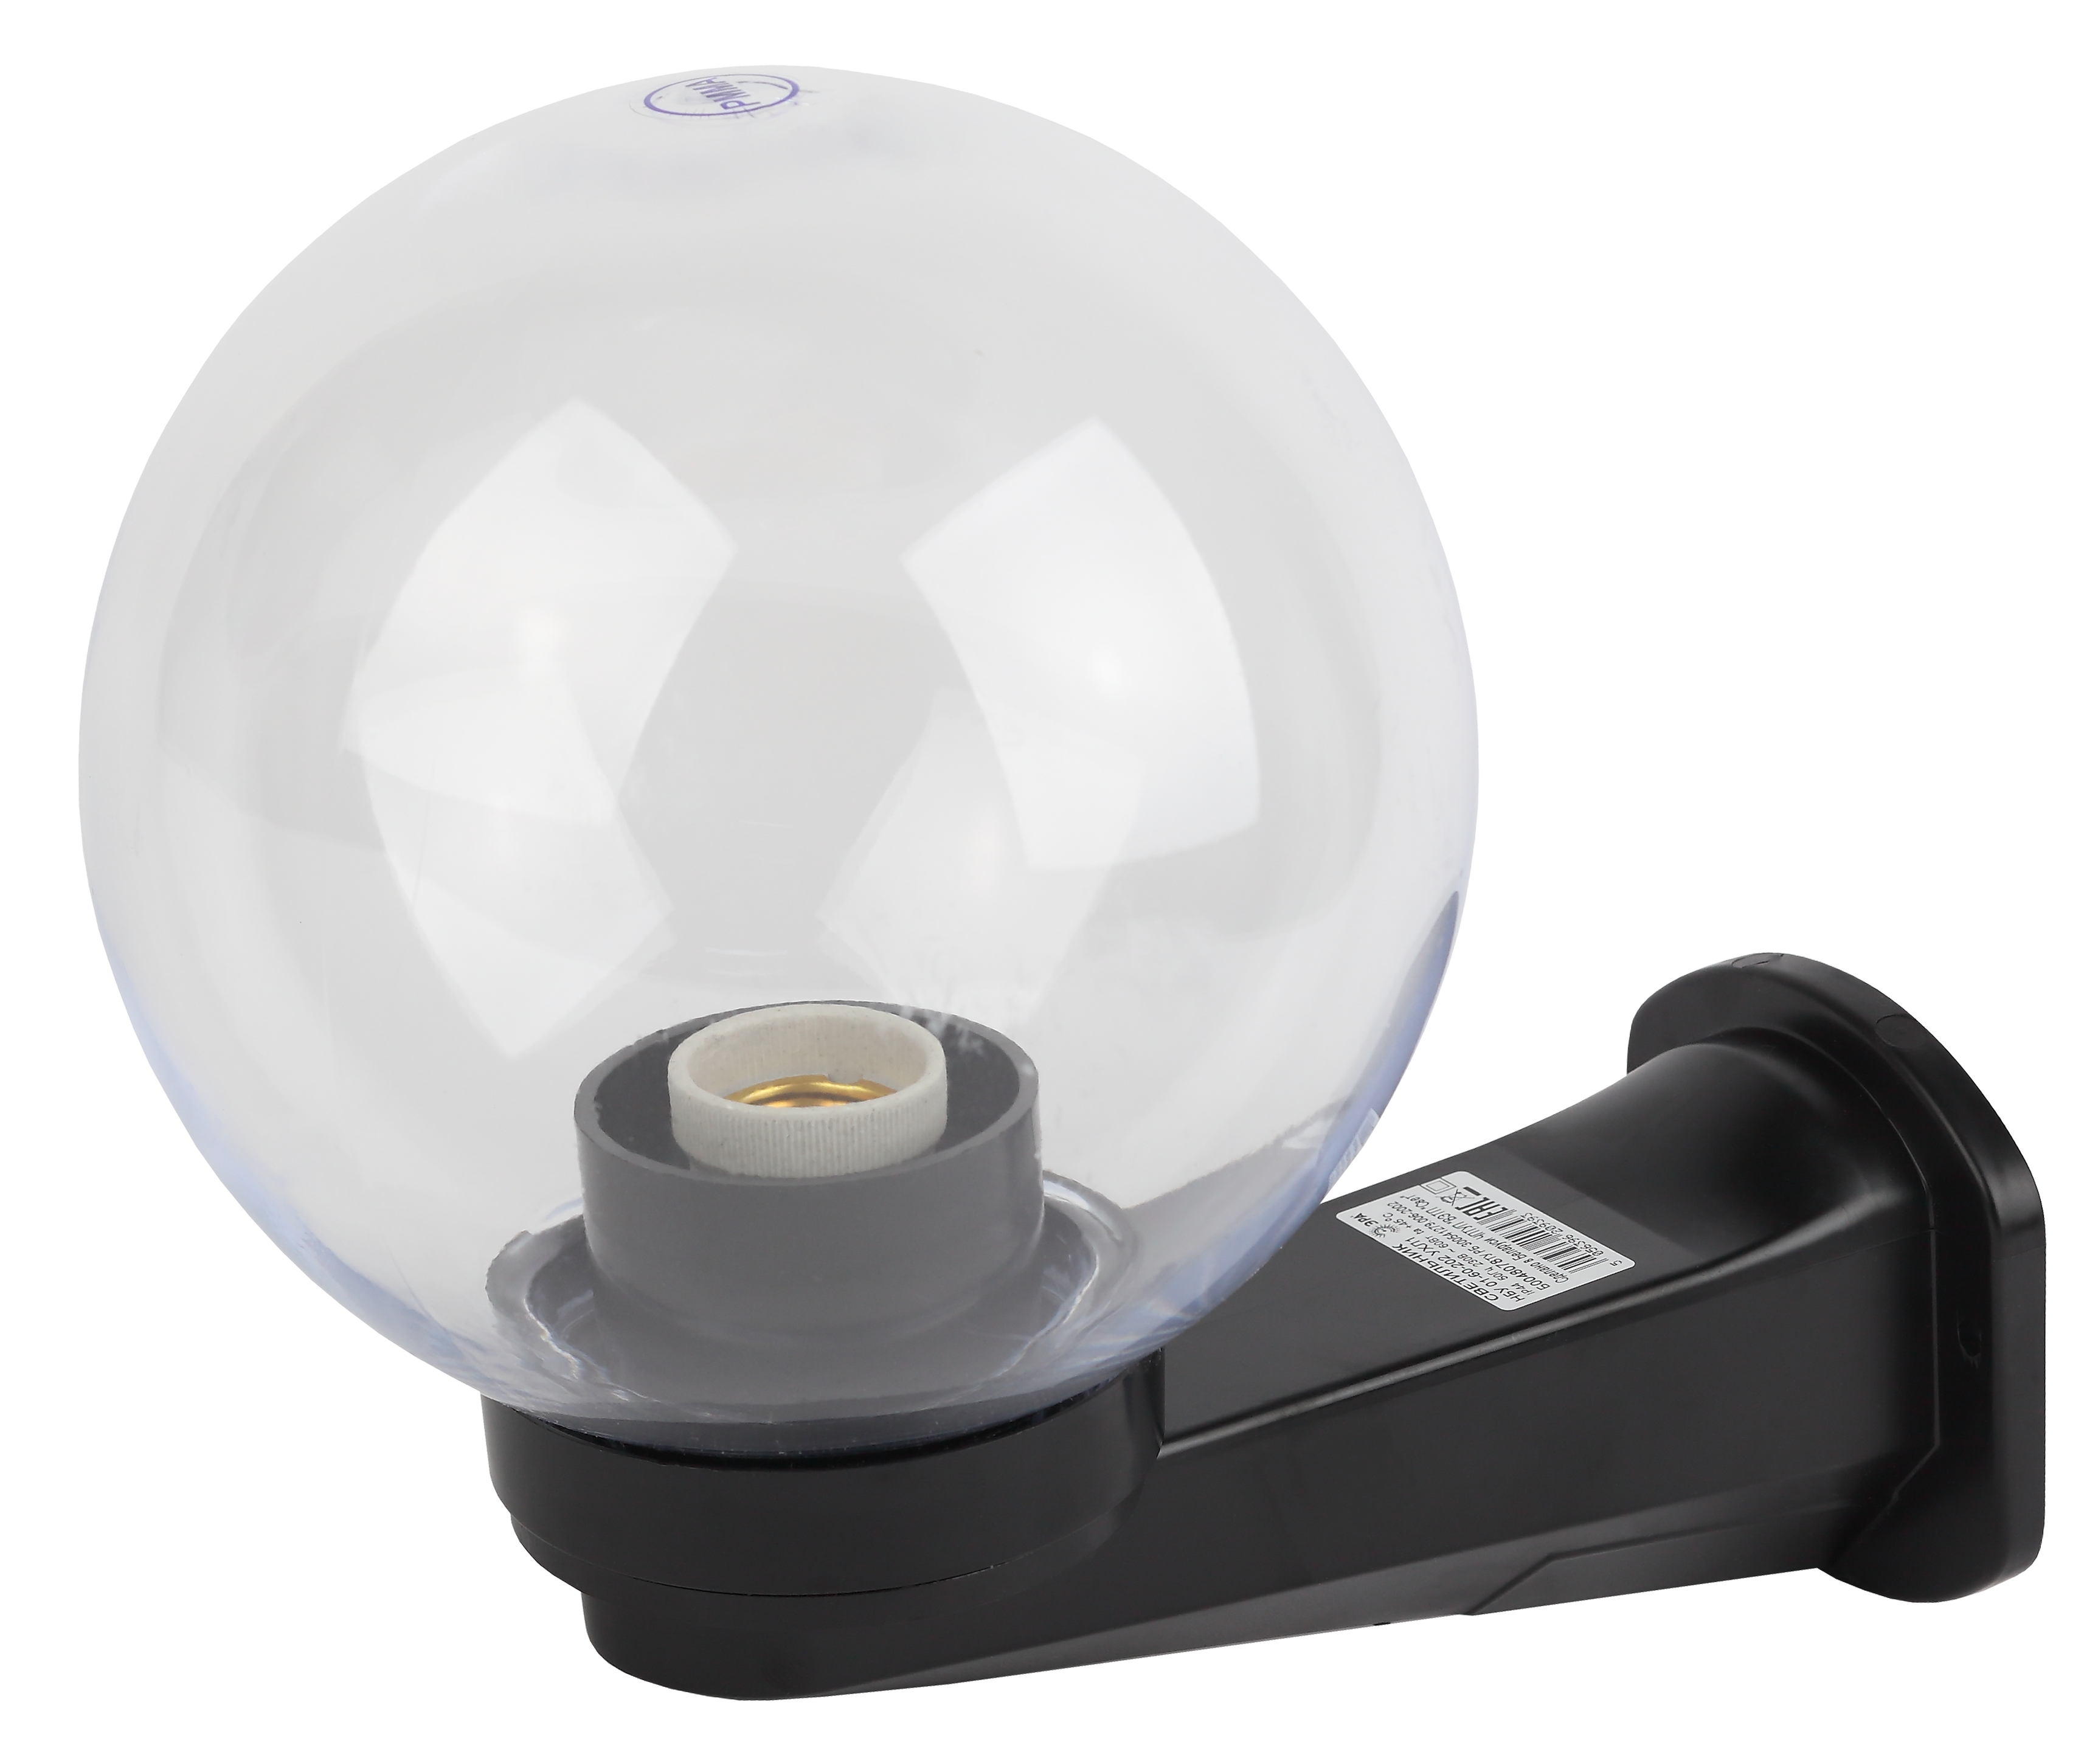 ЭРА НБУ 01-60-202 Светильник садово-парковый, шар прозрачный призма с настенным крепежом D=200 mm